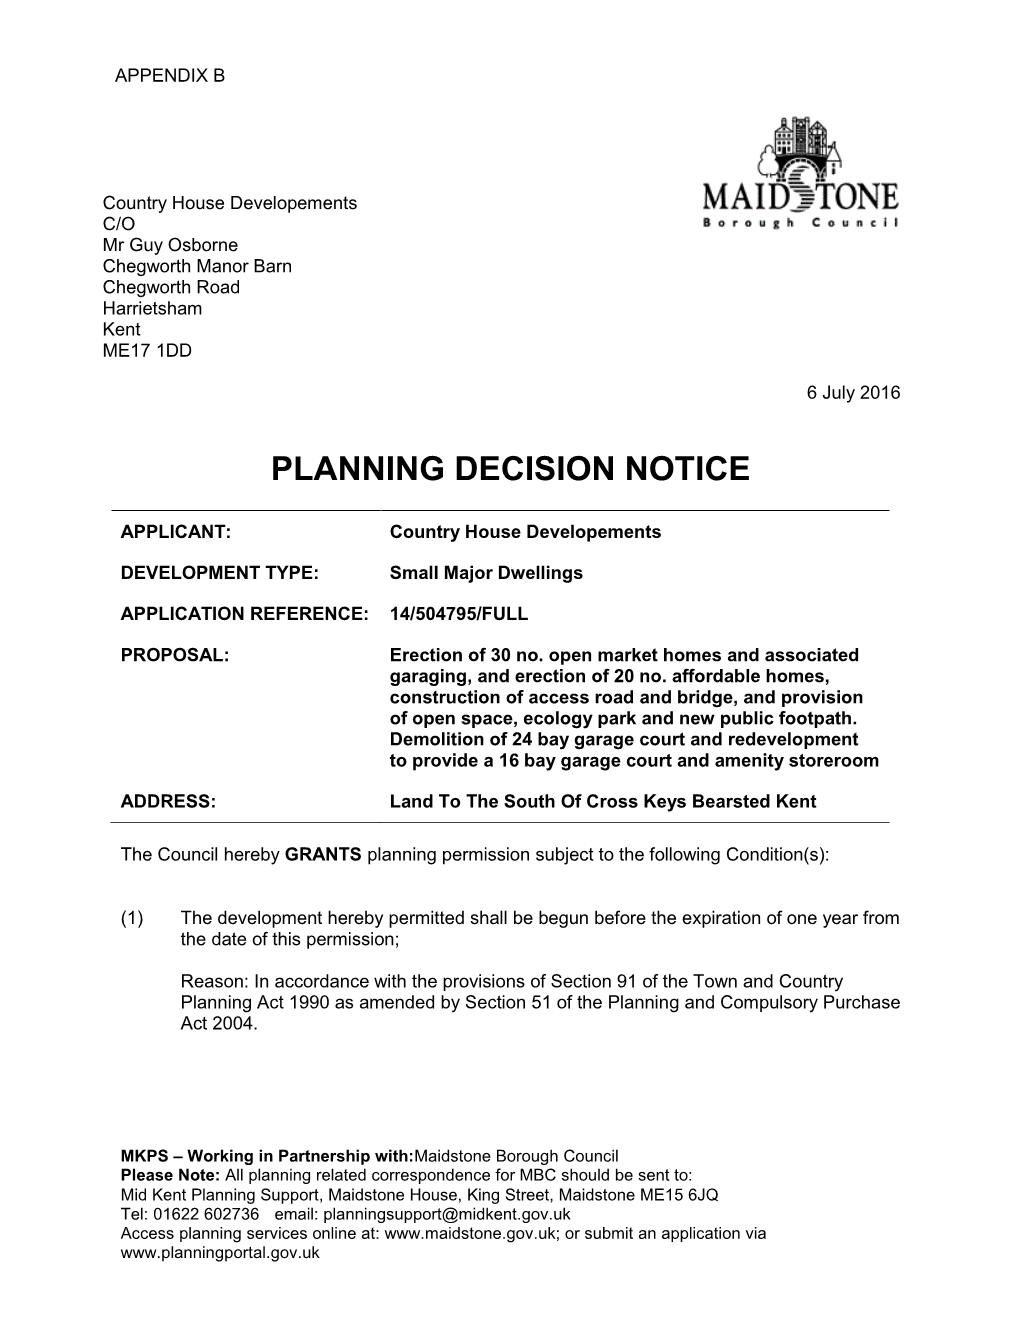 Planning Decision Notice